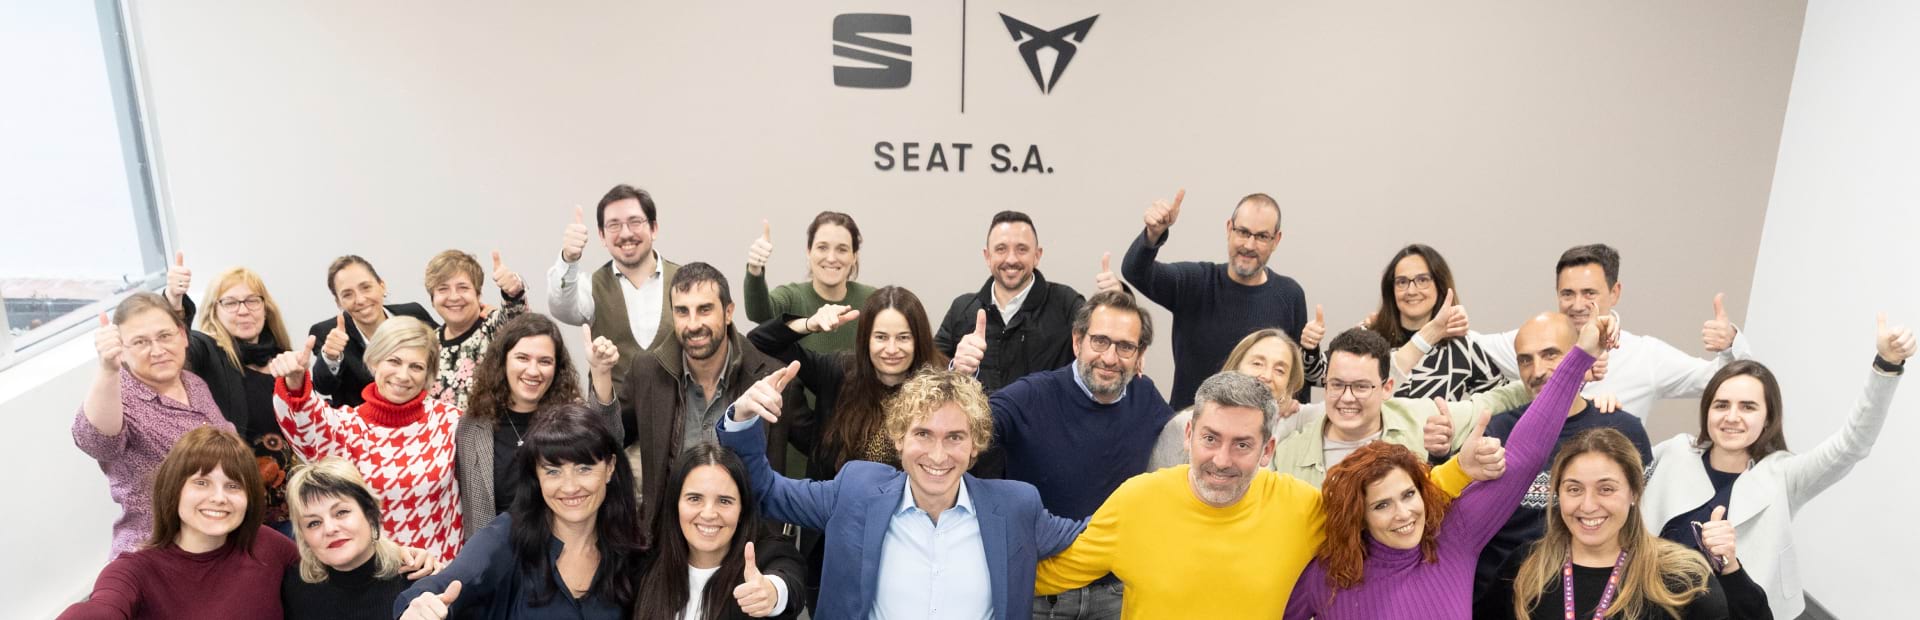 Firma SEAT S.A. podpisała nowy plan na rzecz równości i integracji